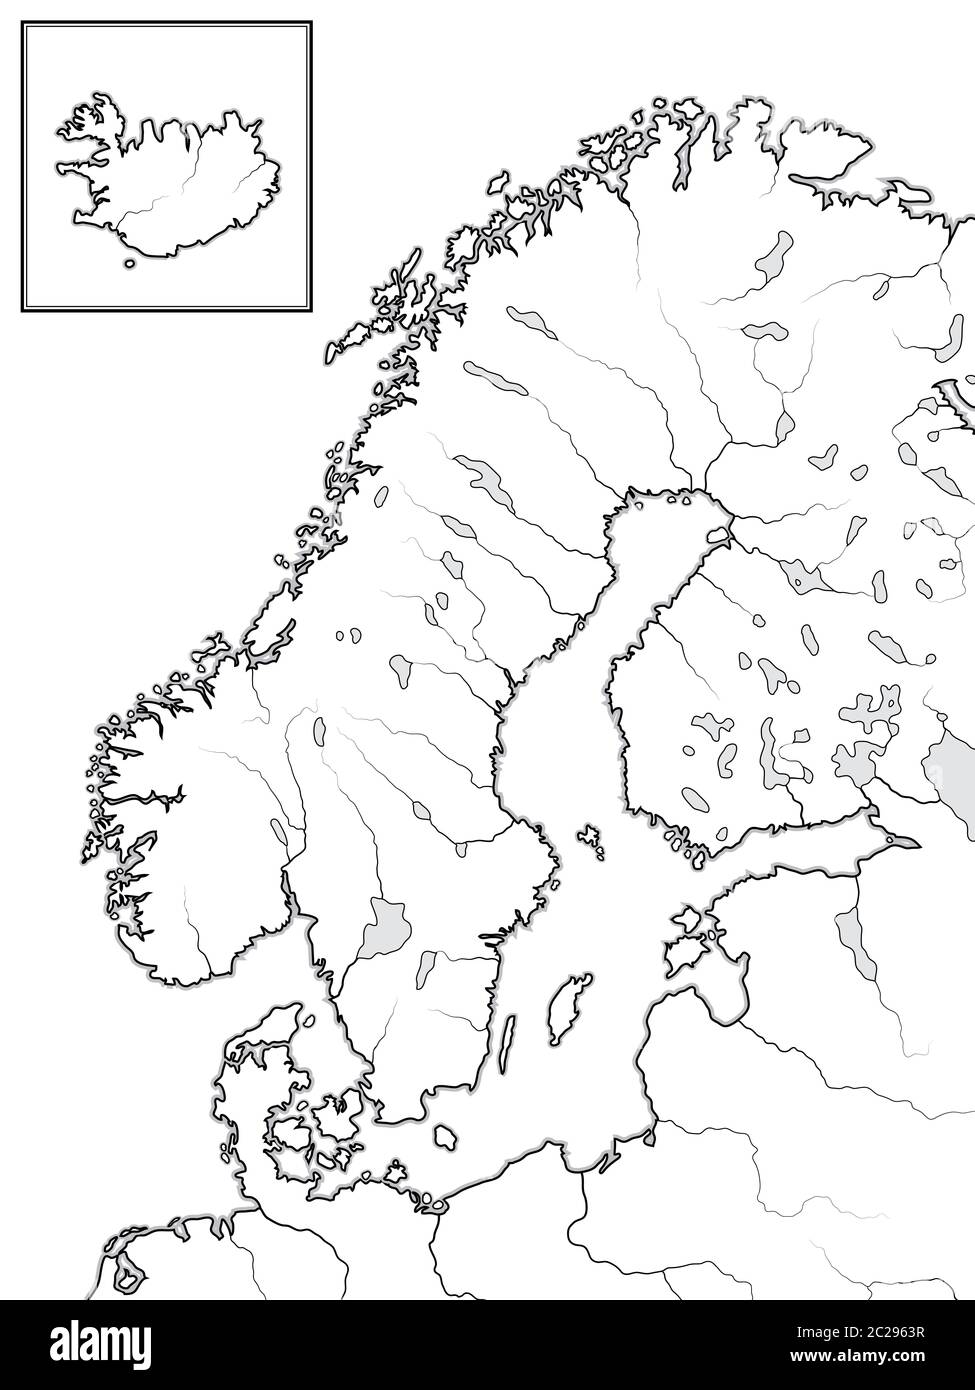 Mappa delle terre SCANDINAVE: Scandinavia, Svezia, Norvegia, Finlandia, Danimarca e Islanda. Grafico geografico. Foto Stock